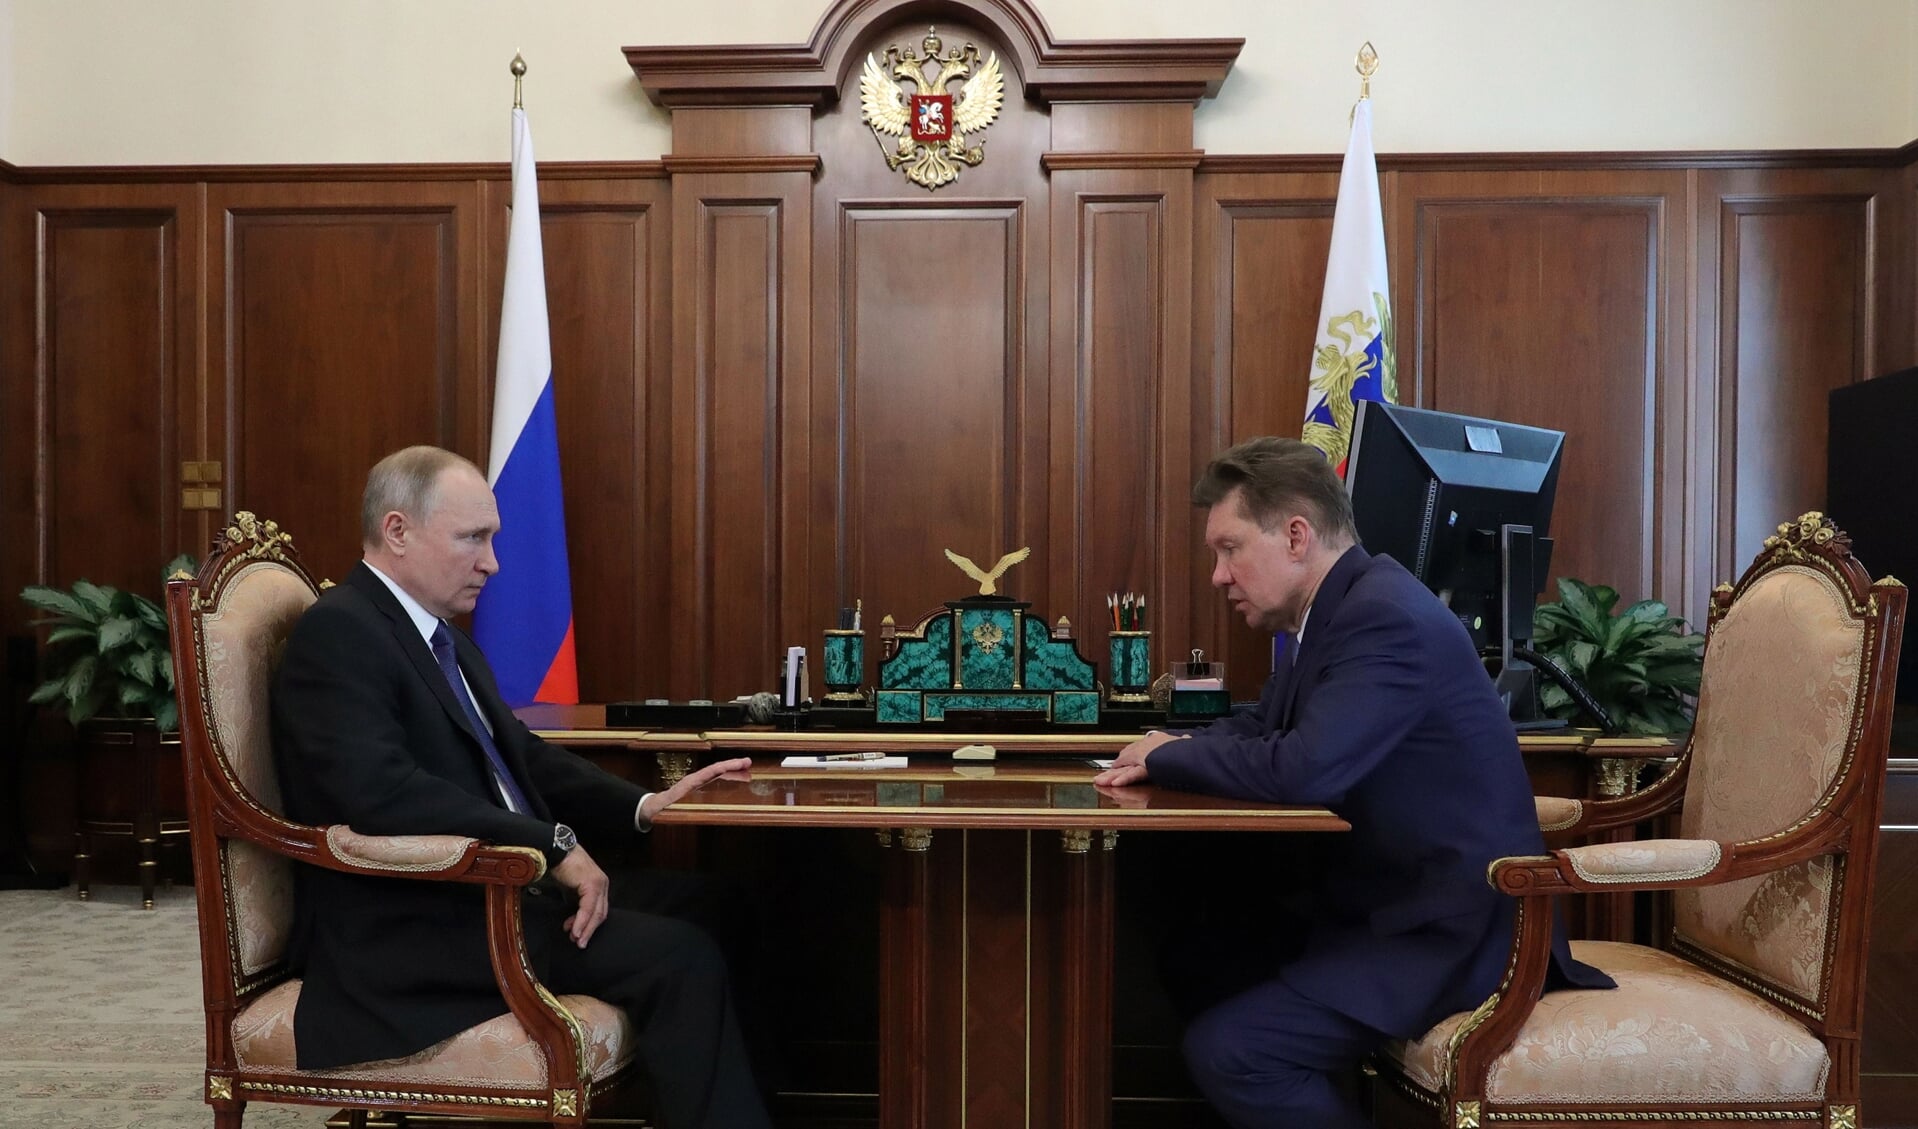 De Russische president Vladimir Putin in overleg met Gazpromdirecteur Alexei Miller. 2020 was een recordjaar voor de Russische gasexport naar Europa via Nord Stream 1.